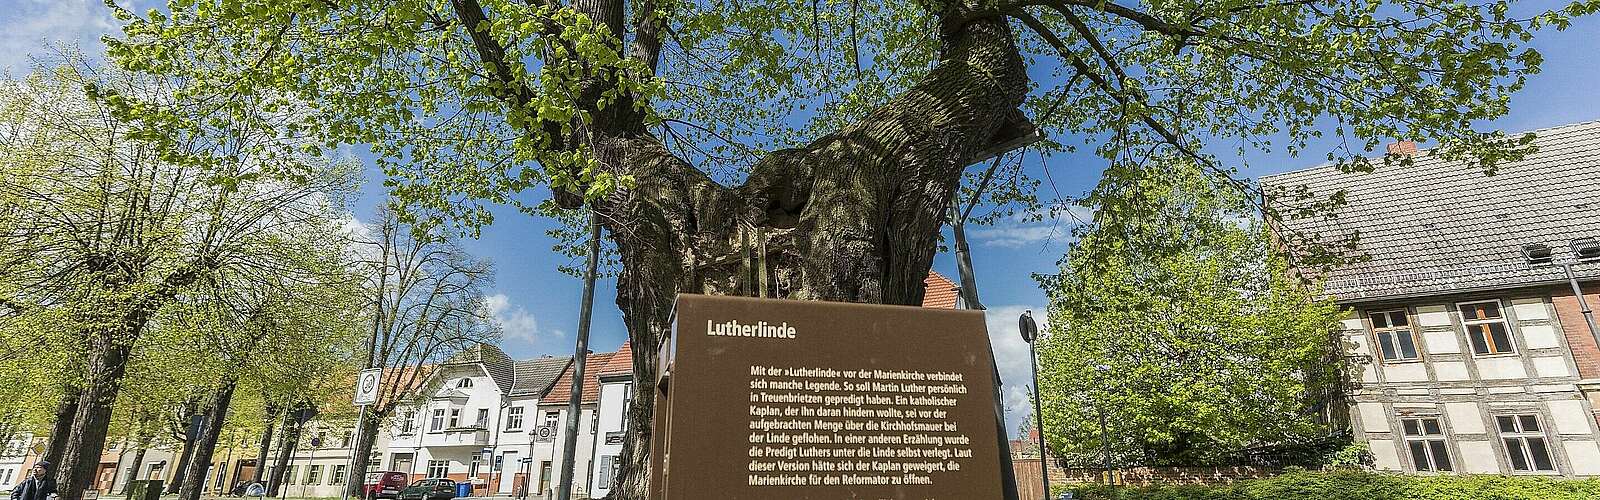 Lutherlinde in Treuenbrietzen,
        
    

        Foto: Fotograf / Lizenz - Media Import/Steffen Lehmann